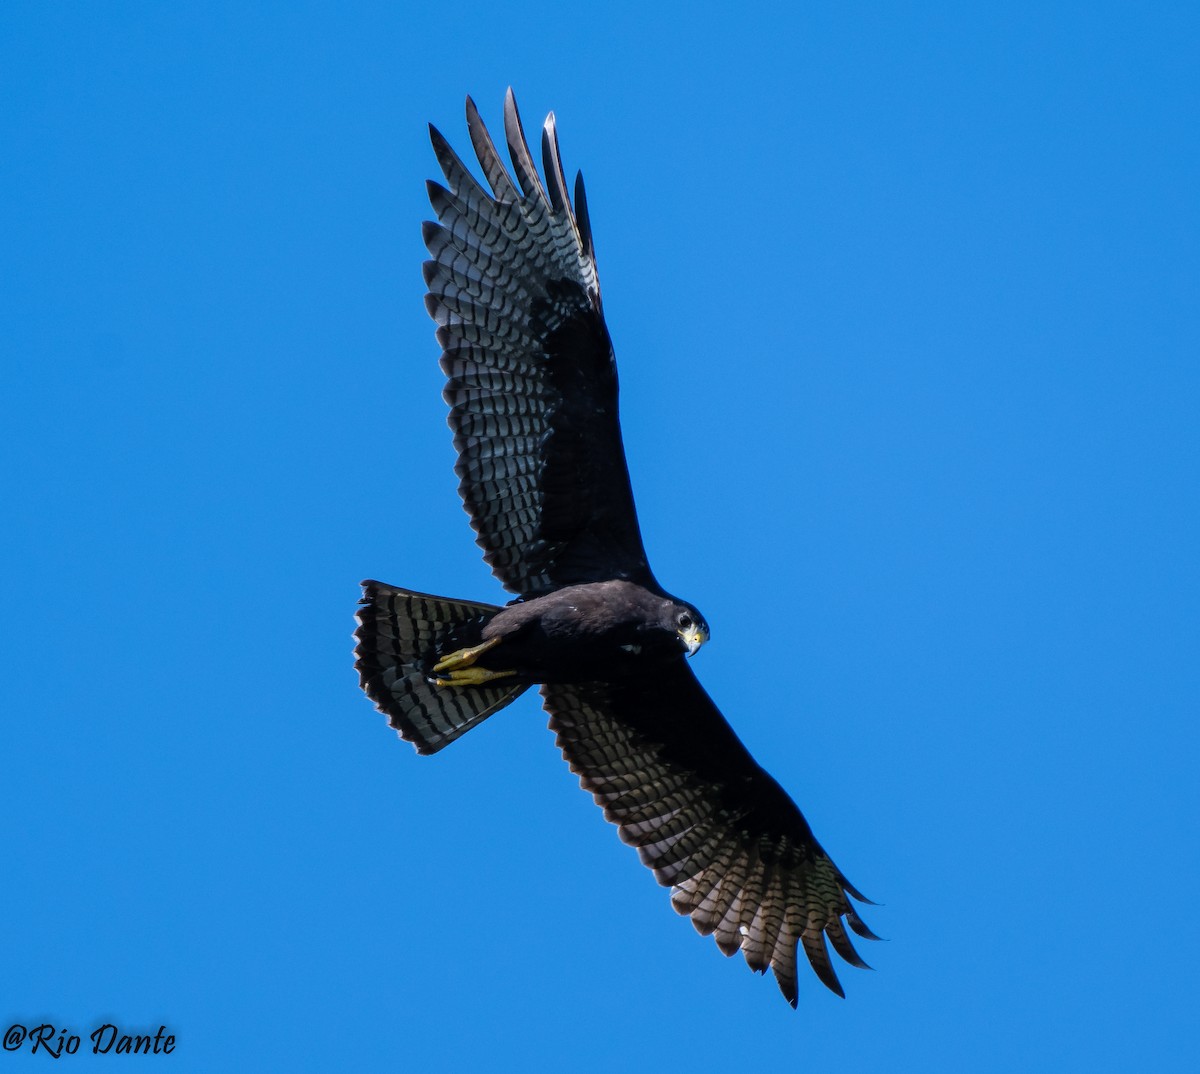 Zone-tailed Hawk - Rio Dante